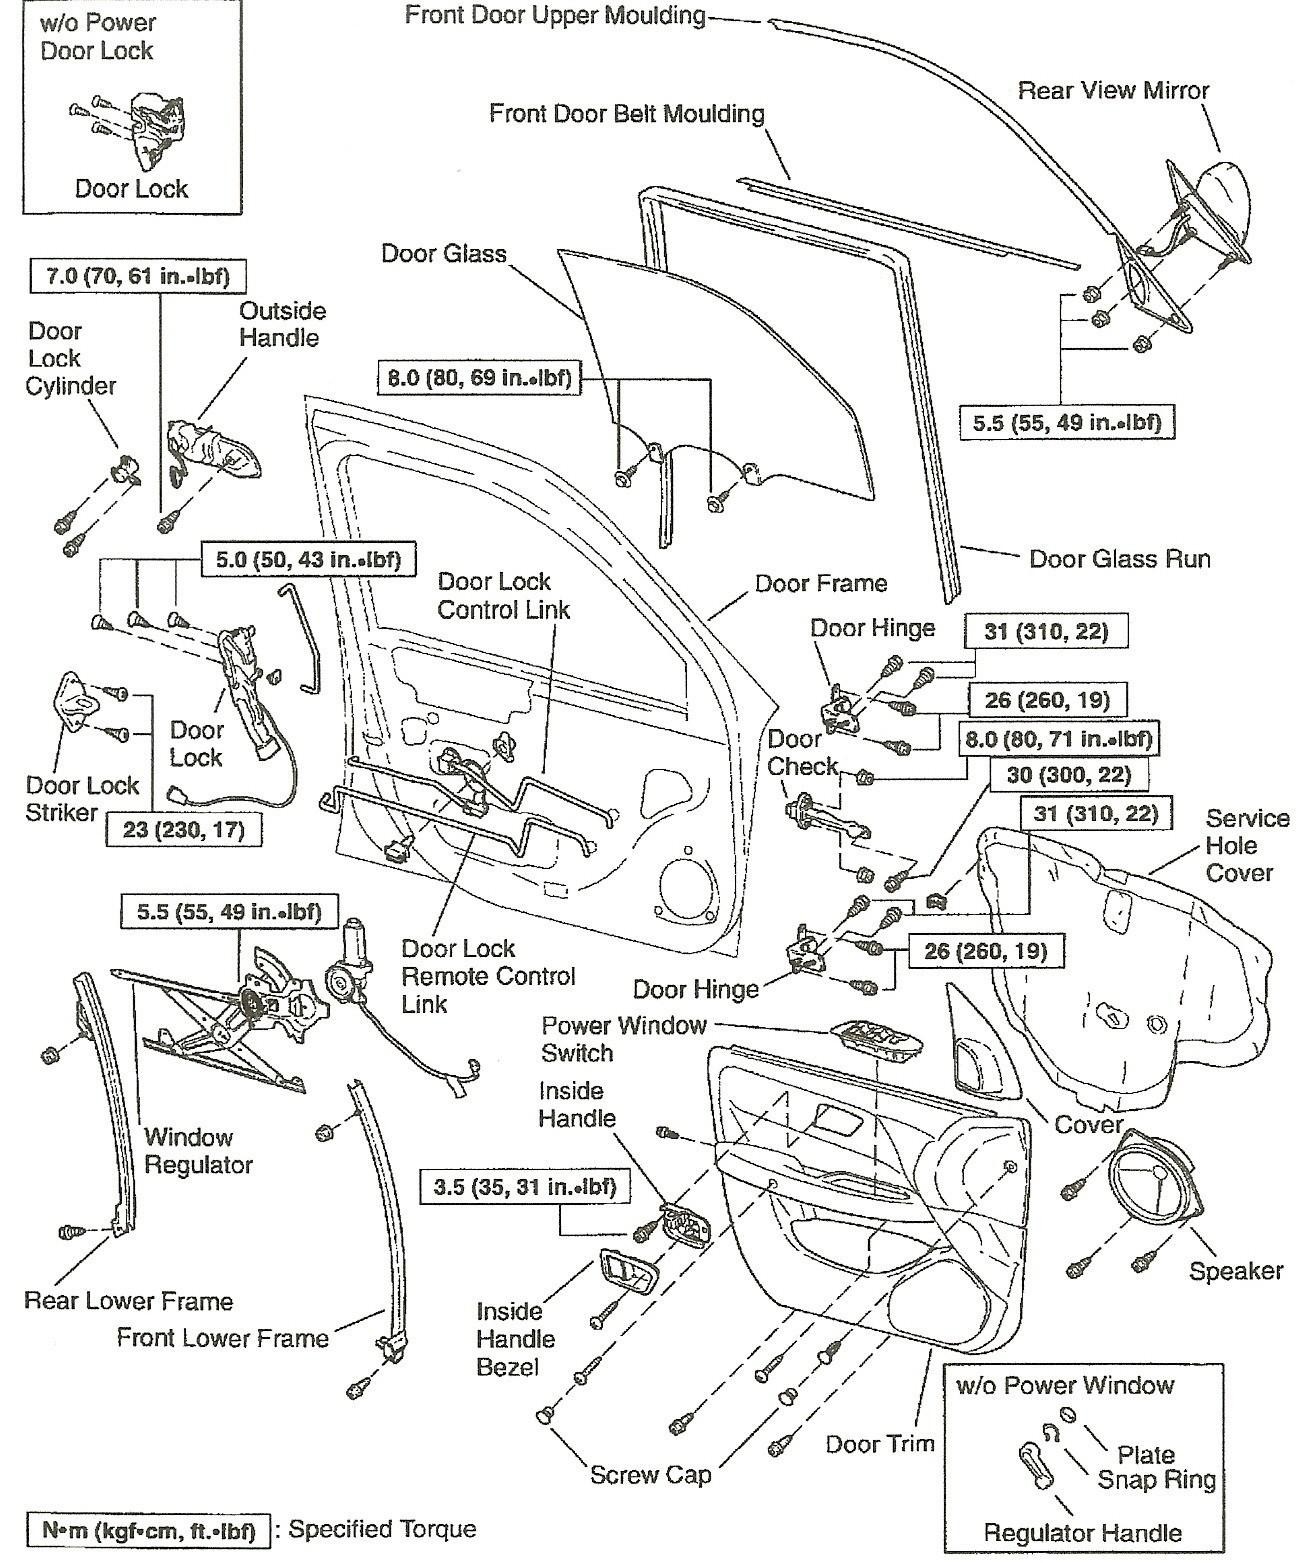 Exterior Car Door Parts Diagram Door Parts Diagram & Chamberlain Garage Door Opener Manual Belt Of Exterior Car Door Parts Diagram